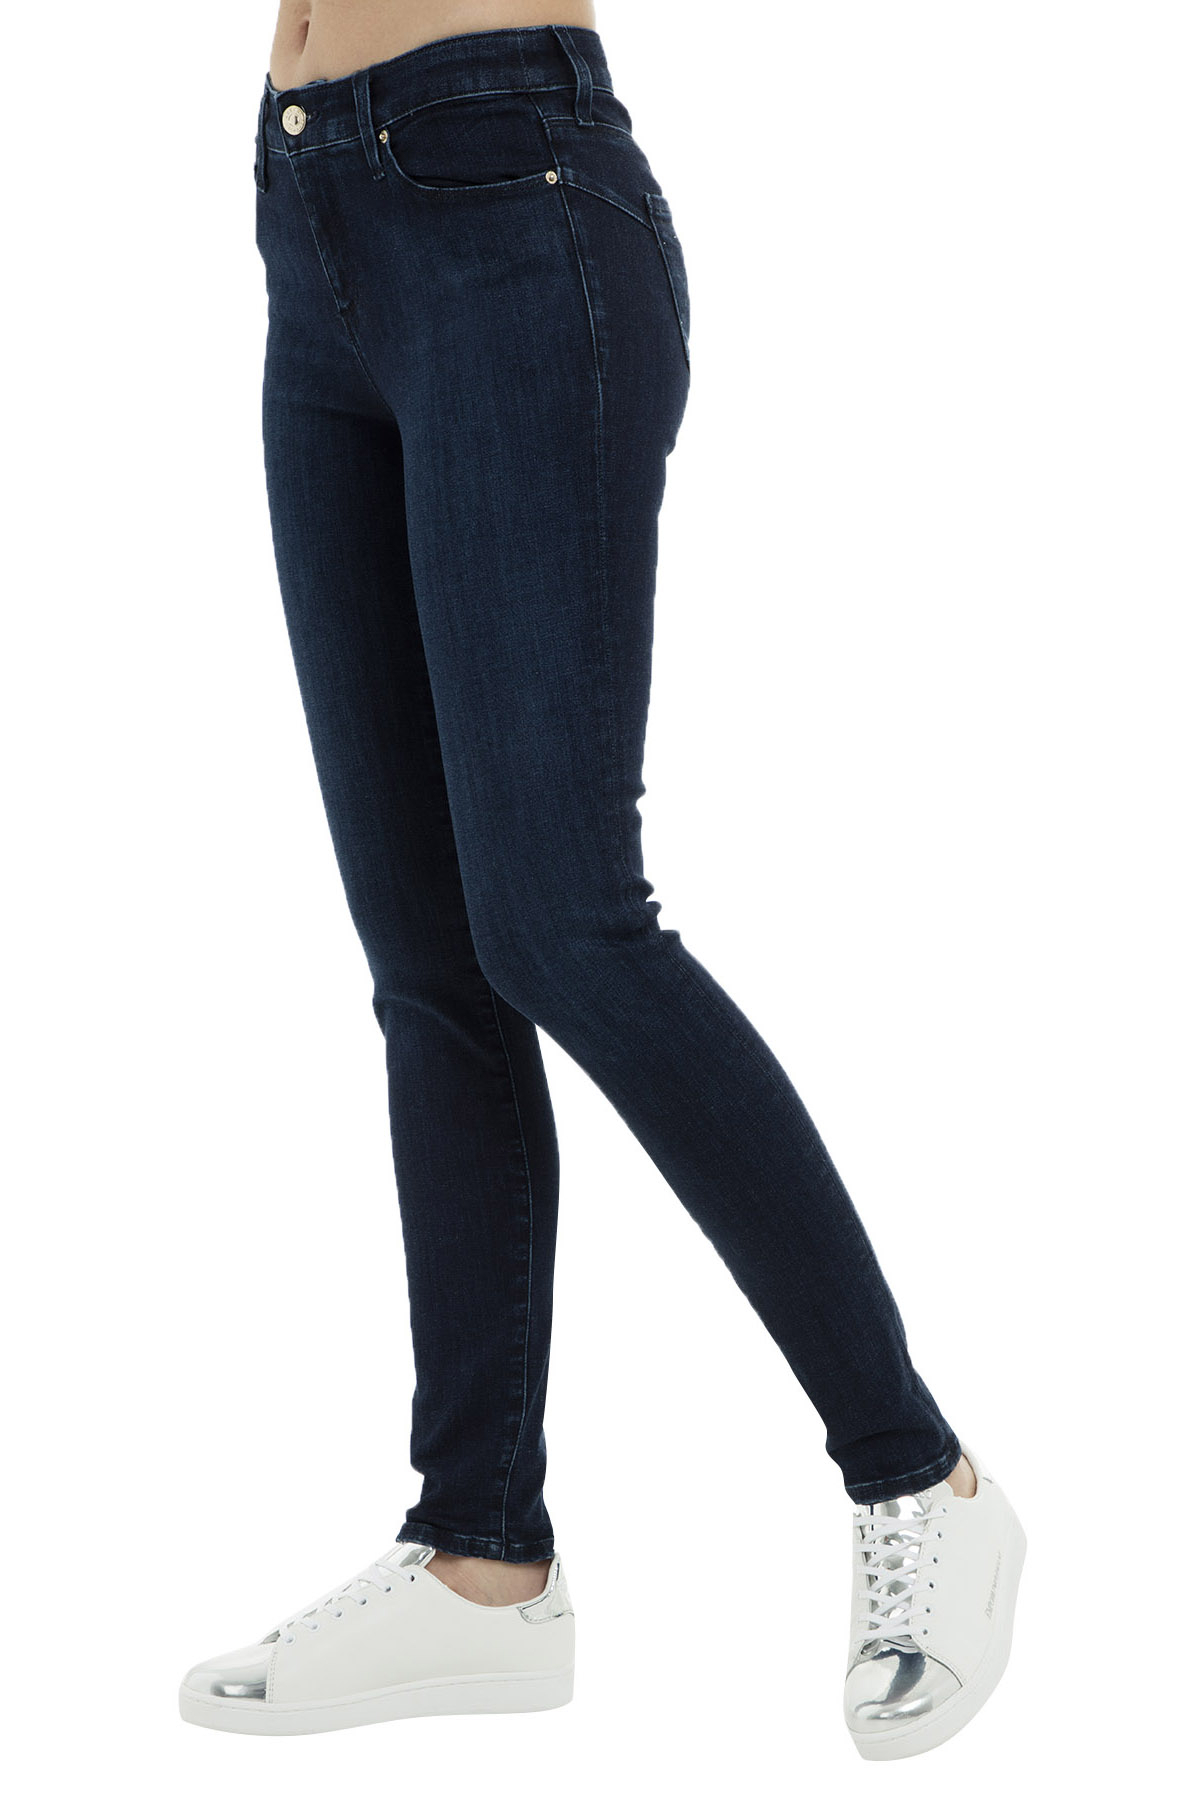 Armani Exchange J69 Jeans Bayan Kot Pantolon 3GYJ69 Y2FKZ 1500 İNDİGO